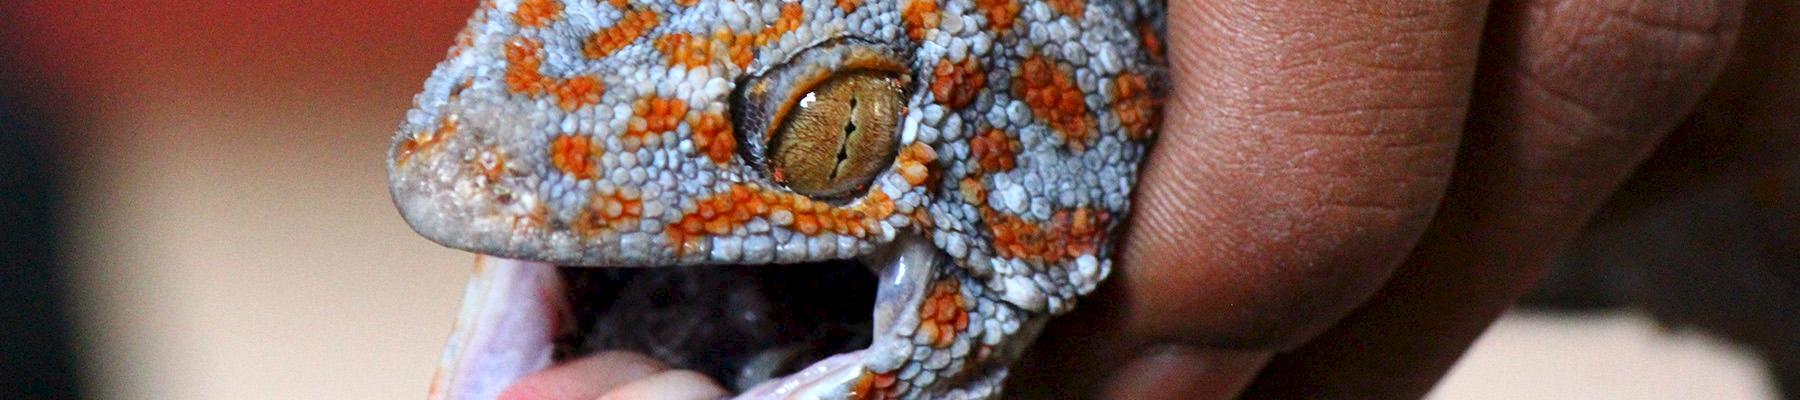 Tokay Gecko Gekko gecko © TRAFFIC